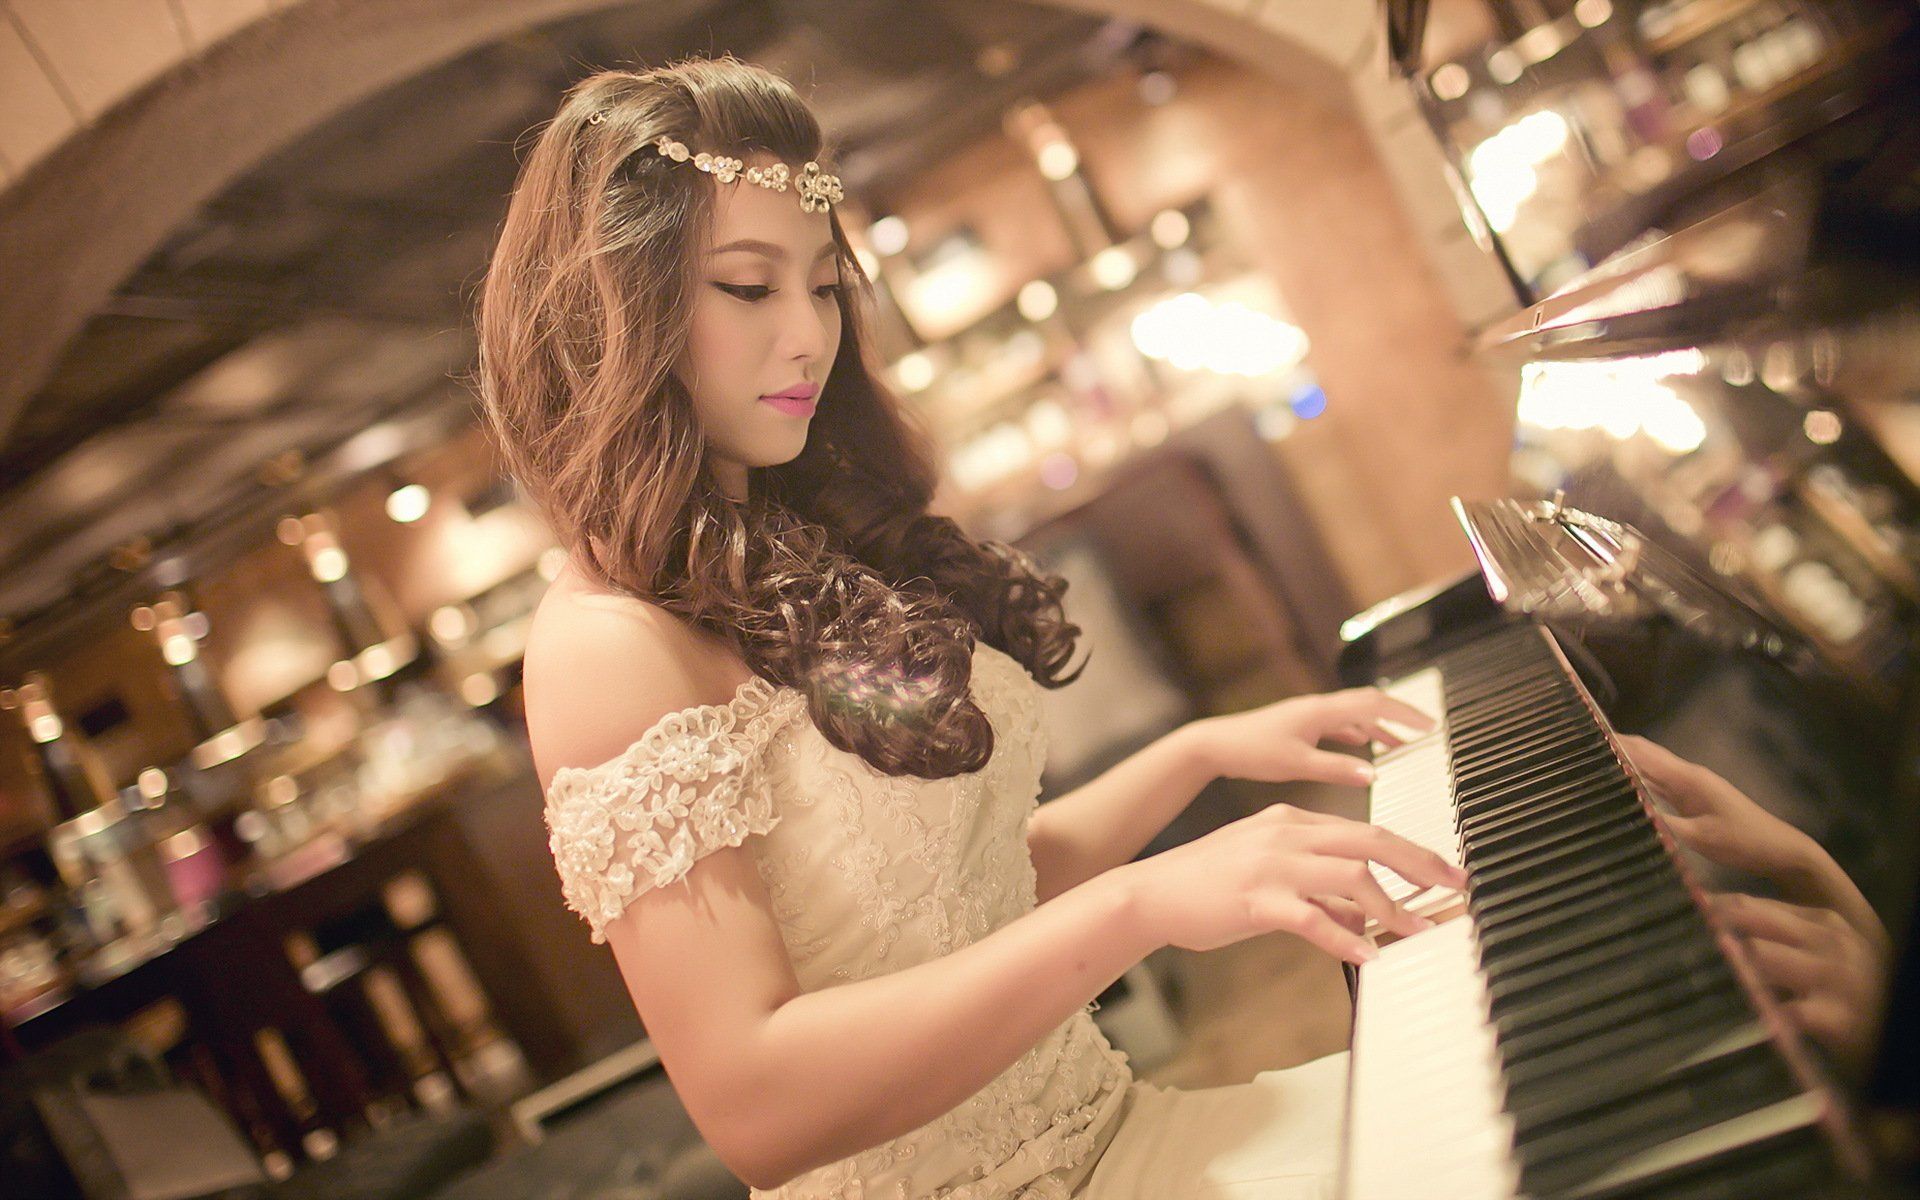 Wallpaper, 1920x1200 px, Asian, girl, music, piano 1920x1200